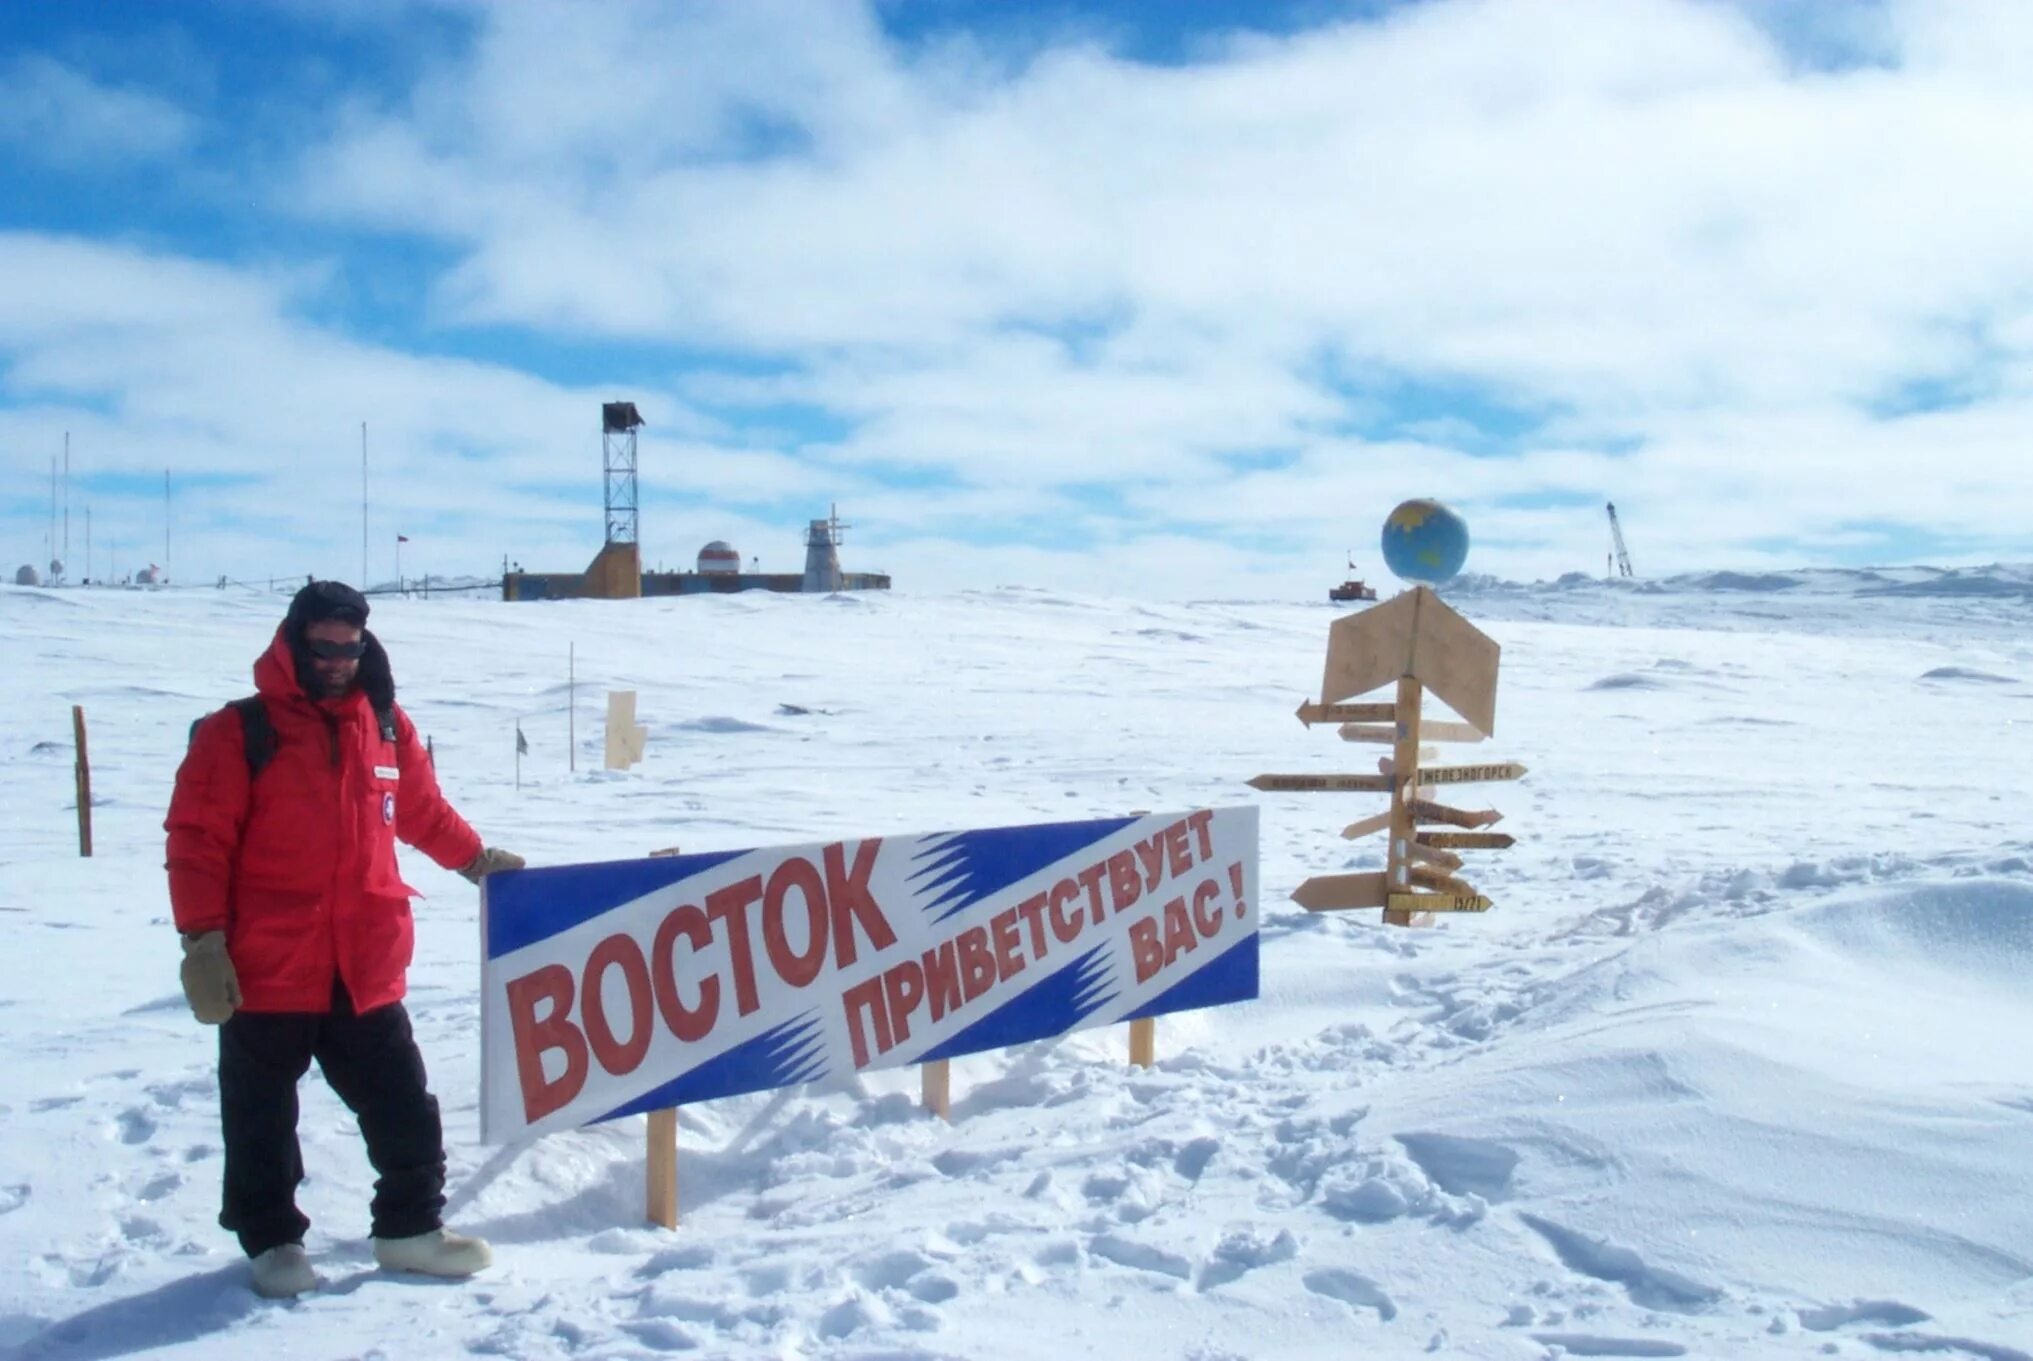 Холодный восток. Восток 2 Полярная станция. Полярная станция Восток в Антарктиде. Южный полюс, Антарктида, станция Восток. Полюс холода станция Восток Антарктида.